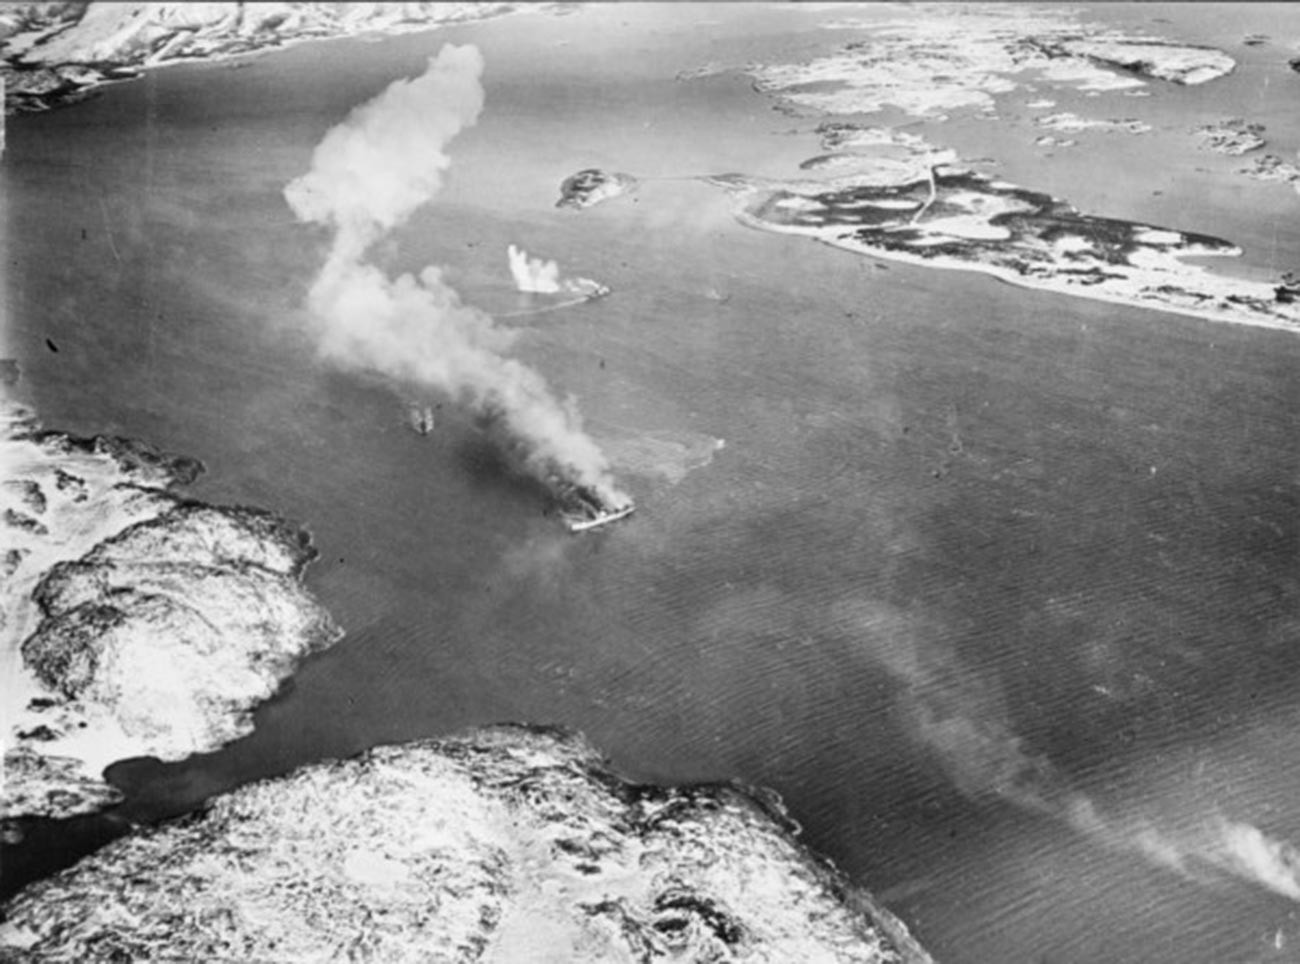 La nave Rigel in fiamme dopo essere stata bombardata dagli aerei britannici